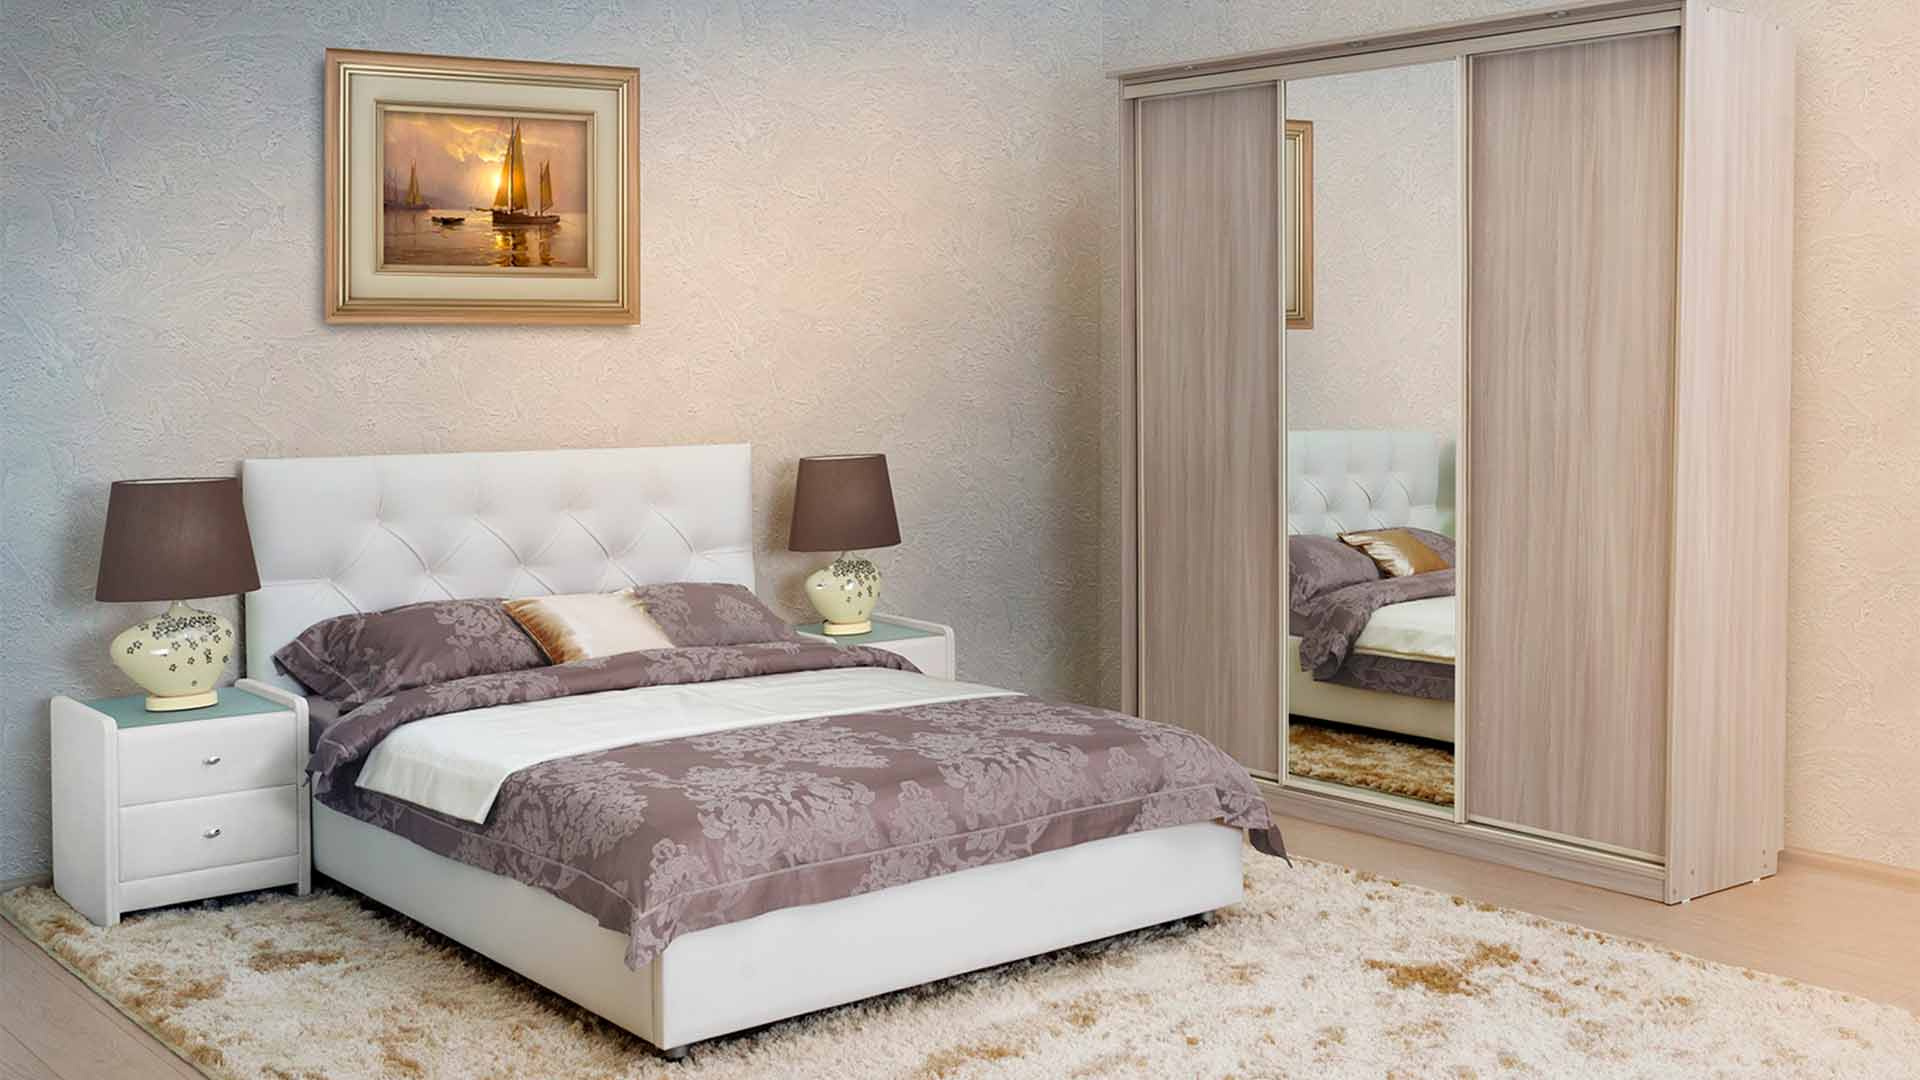 Аскона мебель кровати. Кровать Марлена Аскона. Кровать Марлена Аскона с подъемным механизмом.